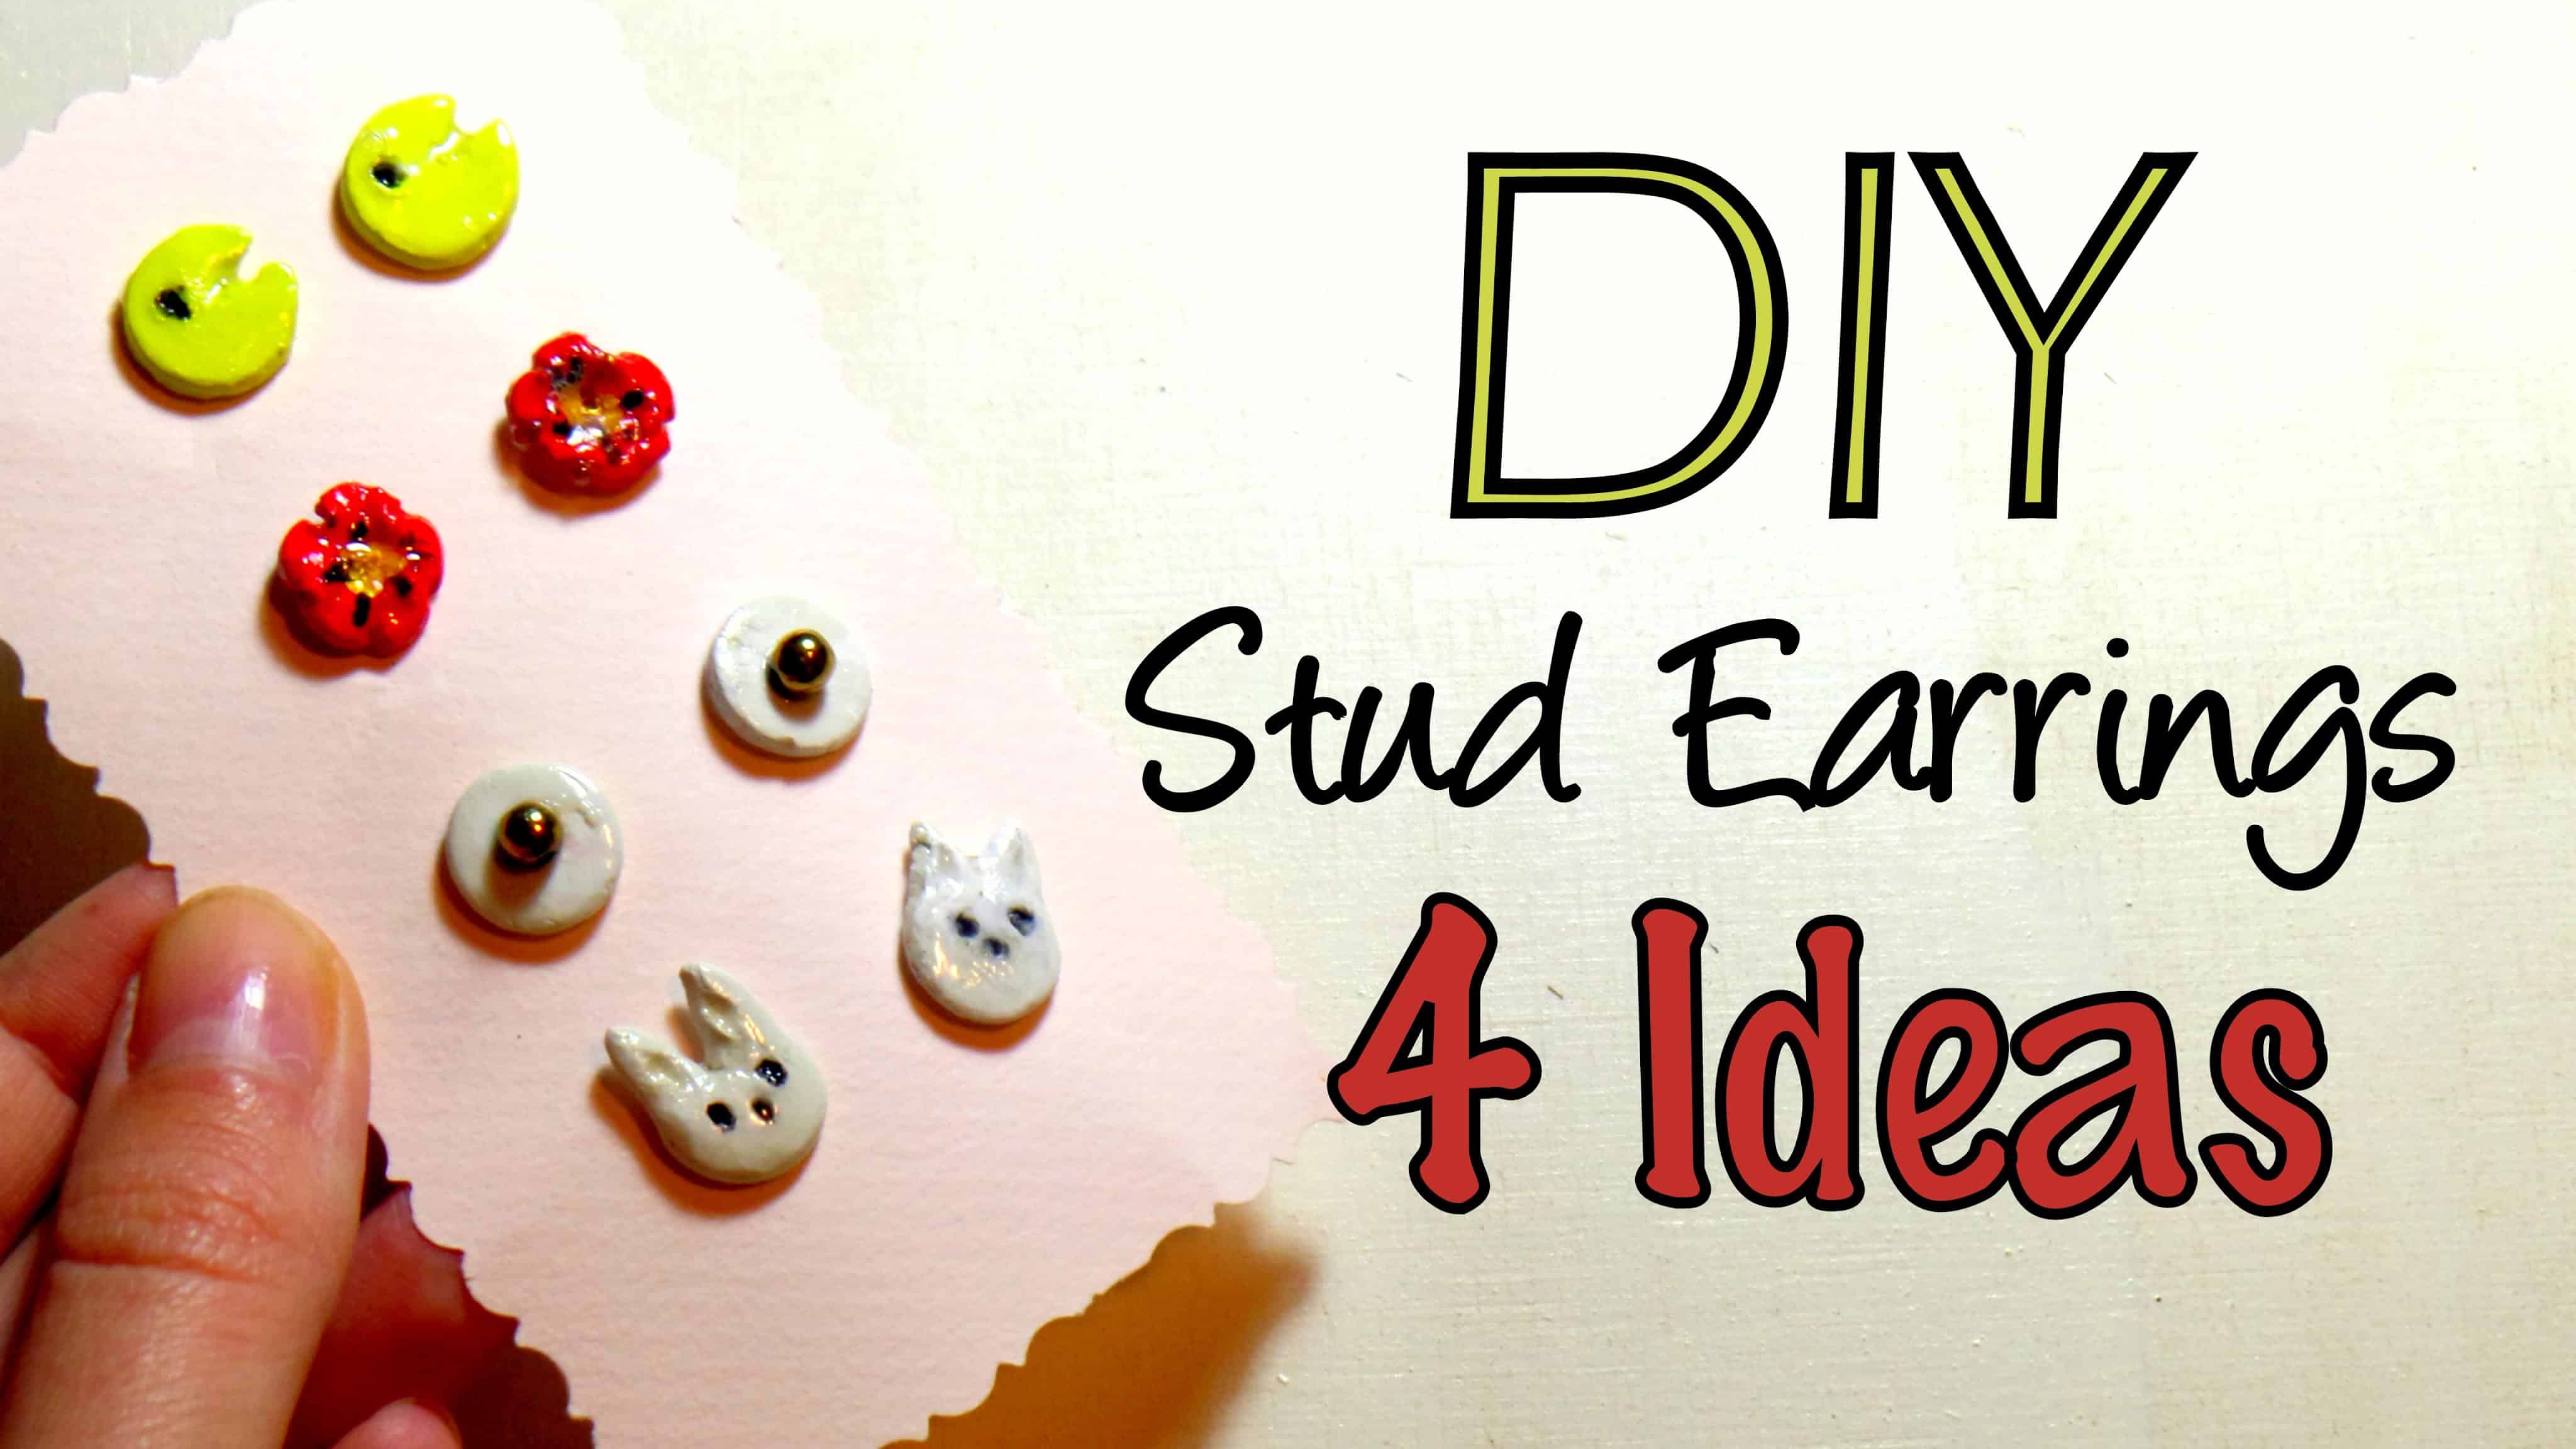 DIY clay stud earrings